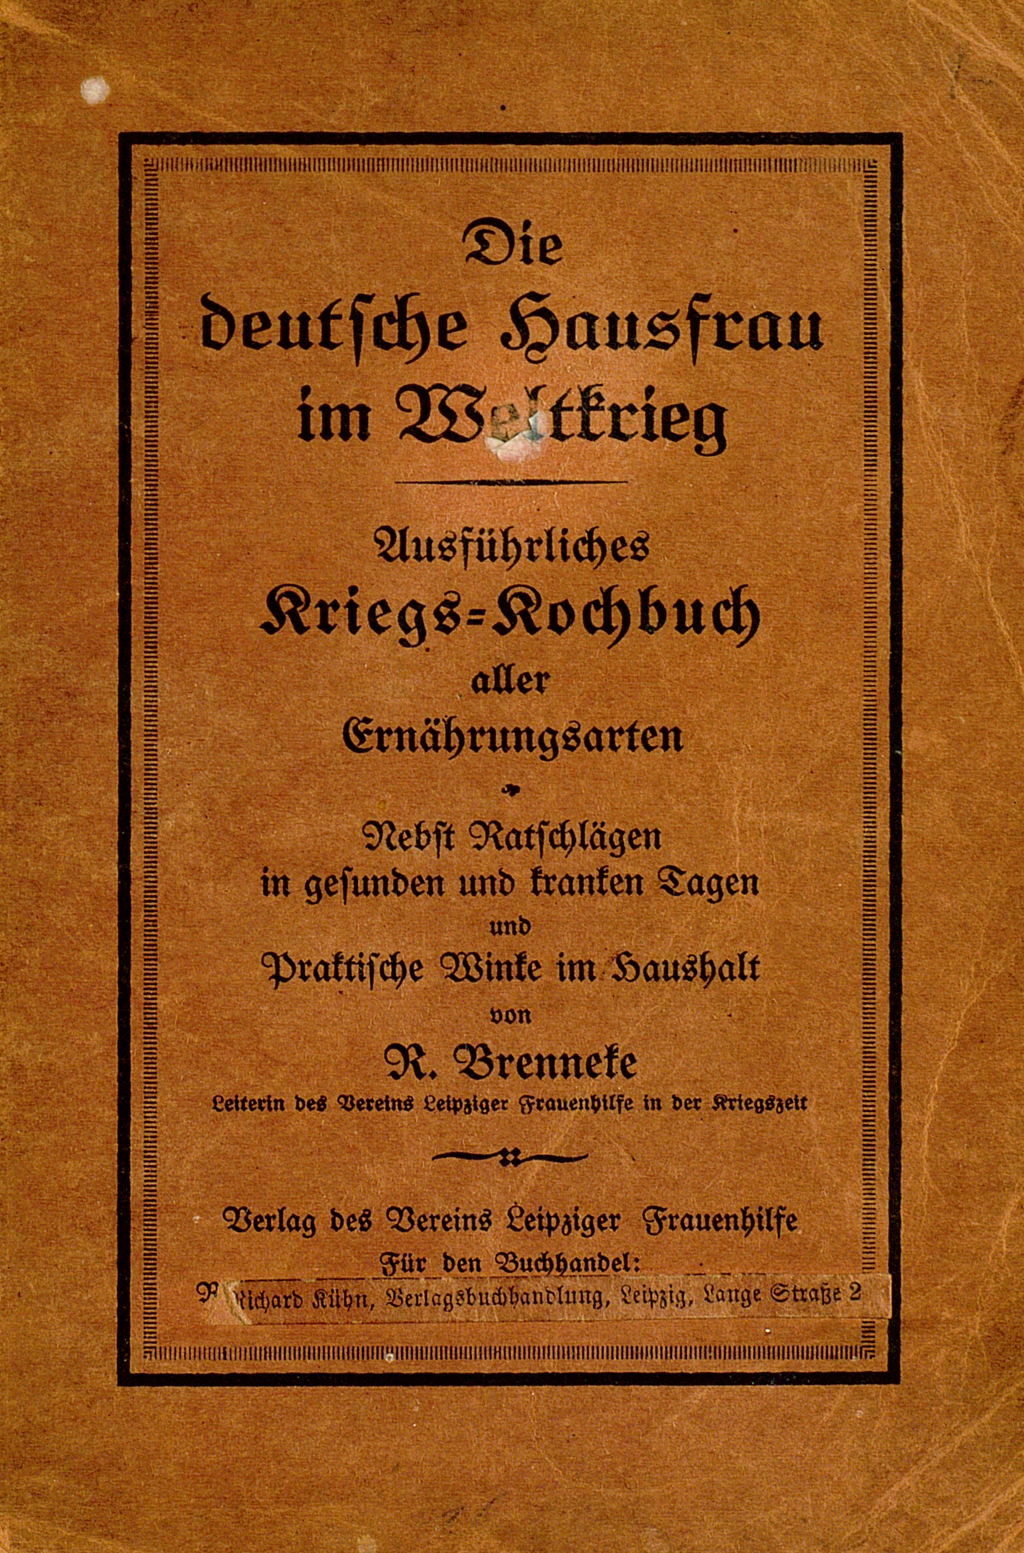 Orangener Buchdeckel von Rosa Brenneke's "Die deutsche Hausfrau im Weltkrieg. Ausführliches Kriegs-Kochbuch aller Ernährungsarten."